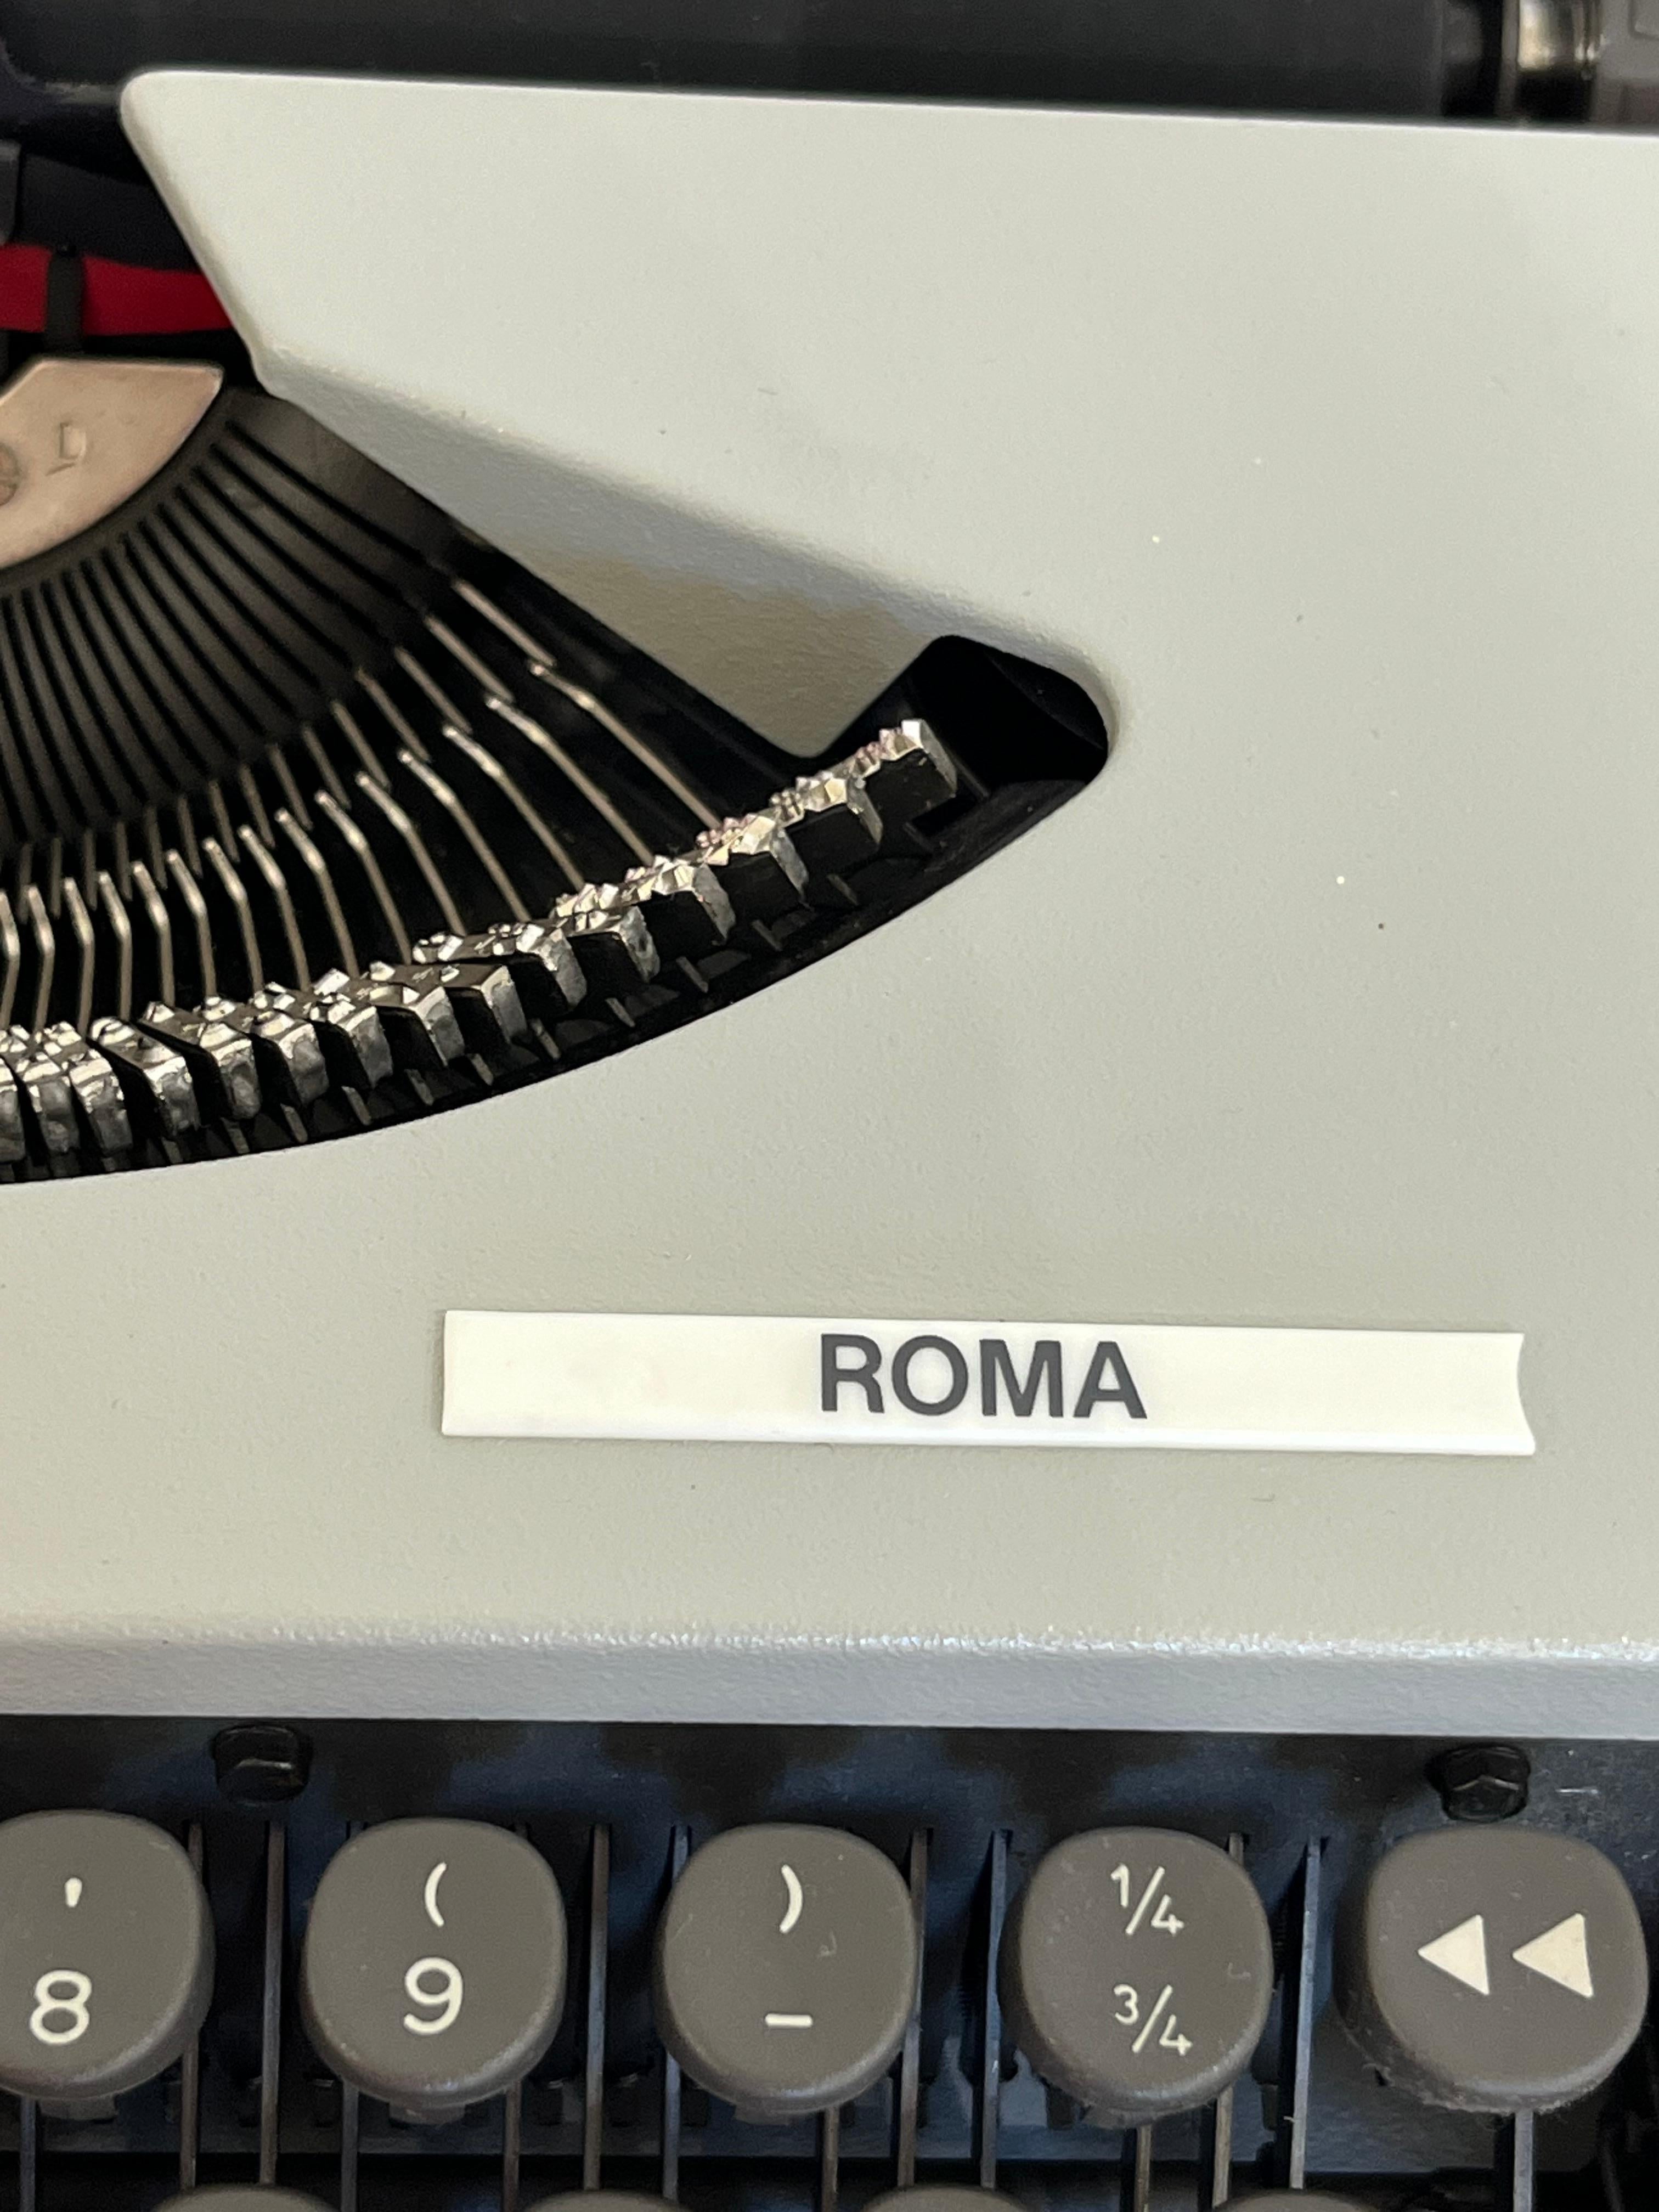 olivetti typewriter models